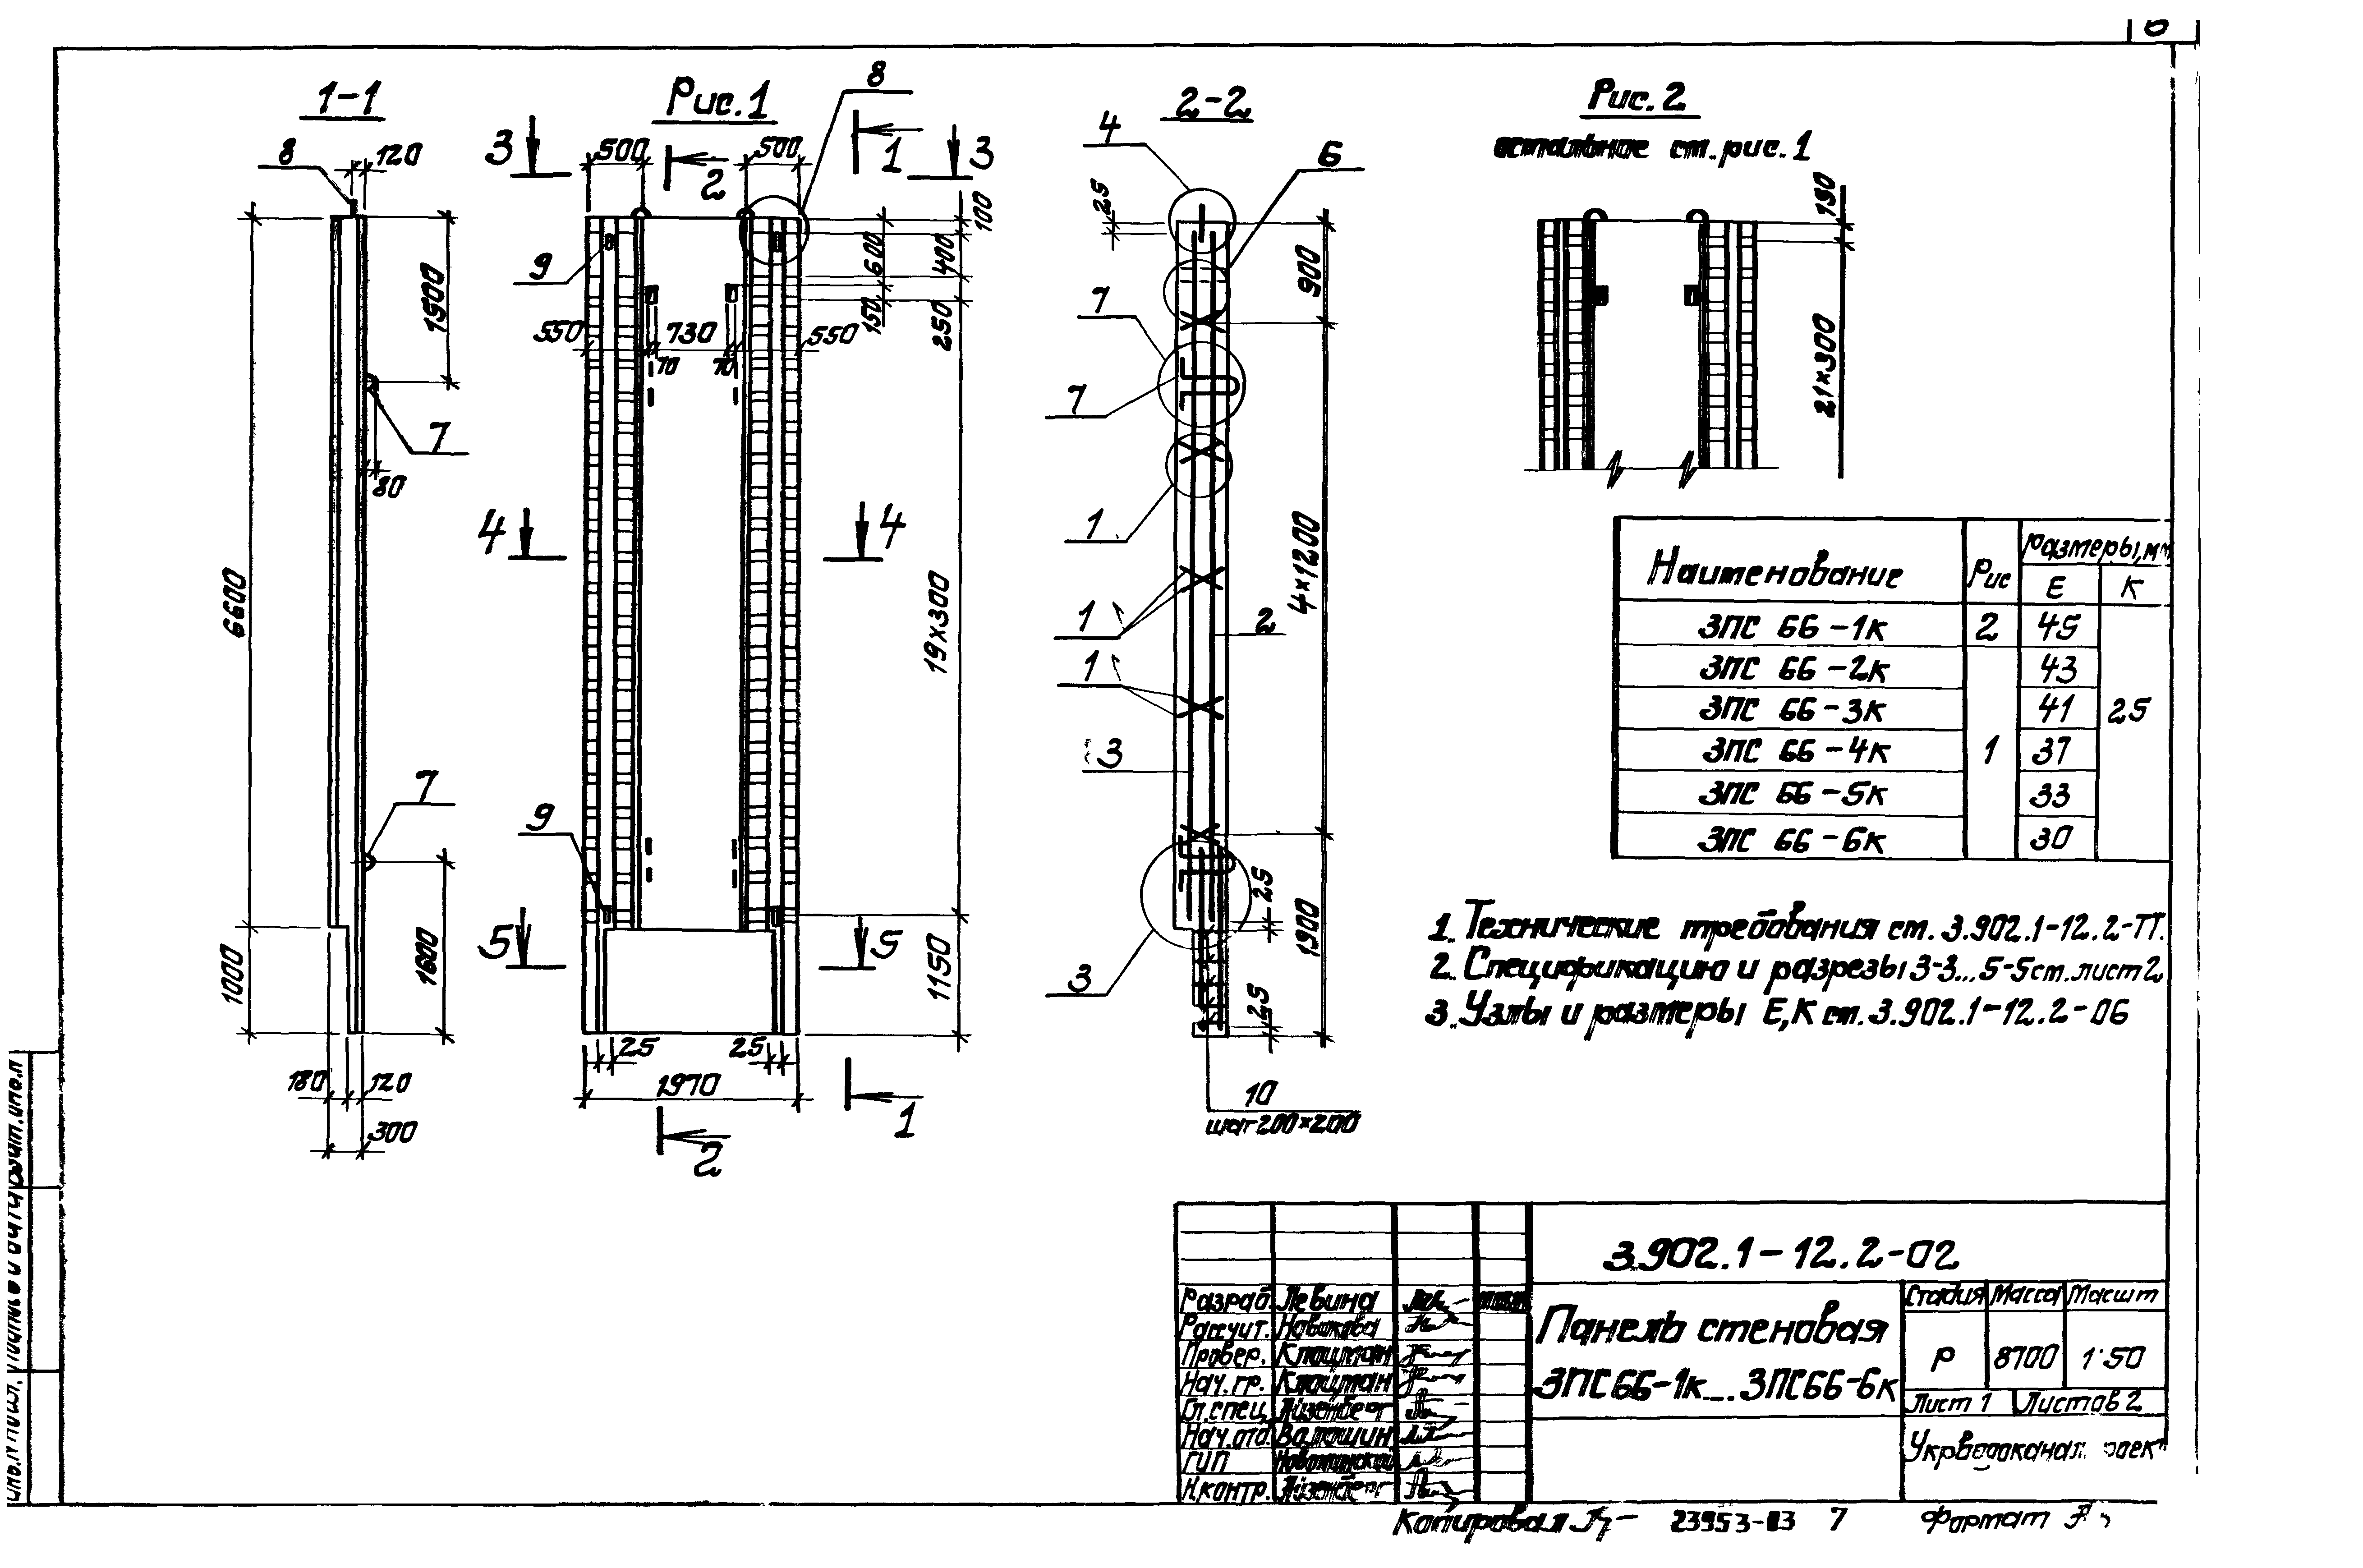 Панель стеновая 3ПС66-5к Серия 3.902.1-12, вып.2